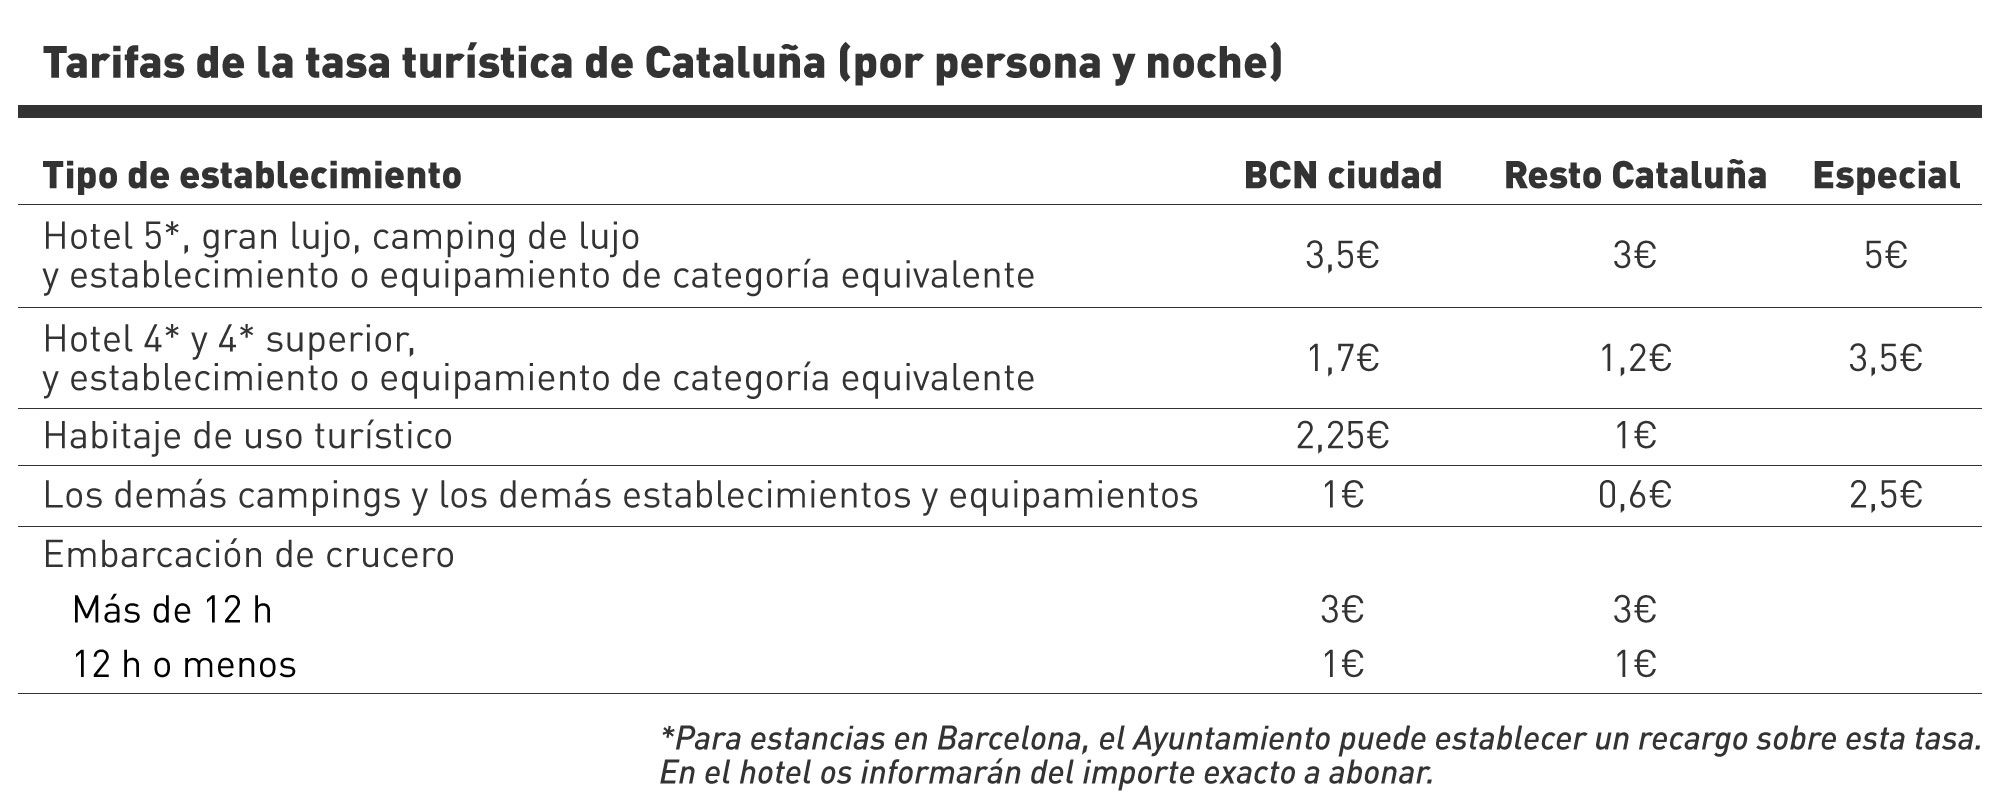 tabla con los precios de la tasa turística de Cataluña